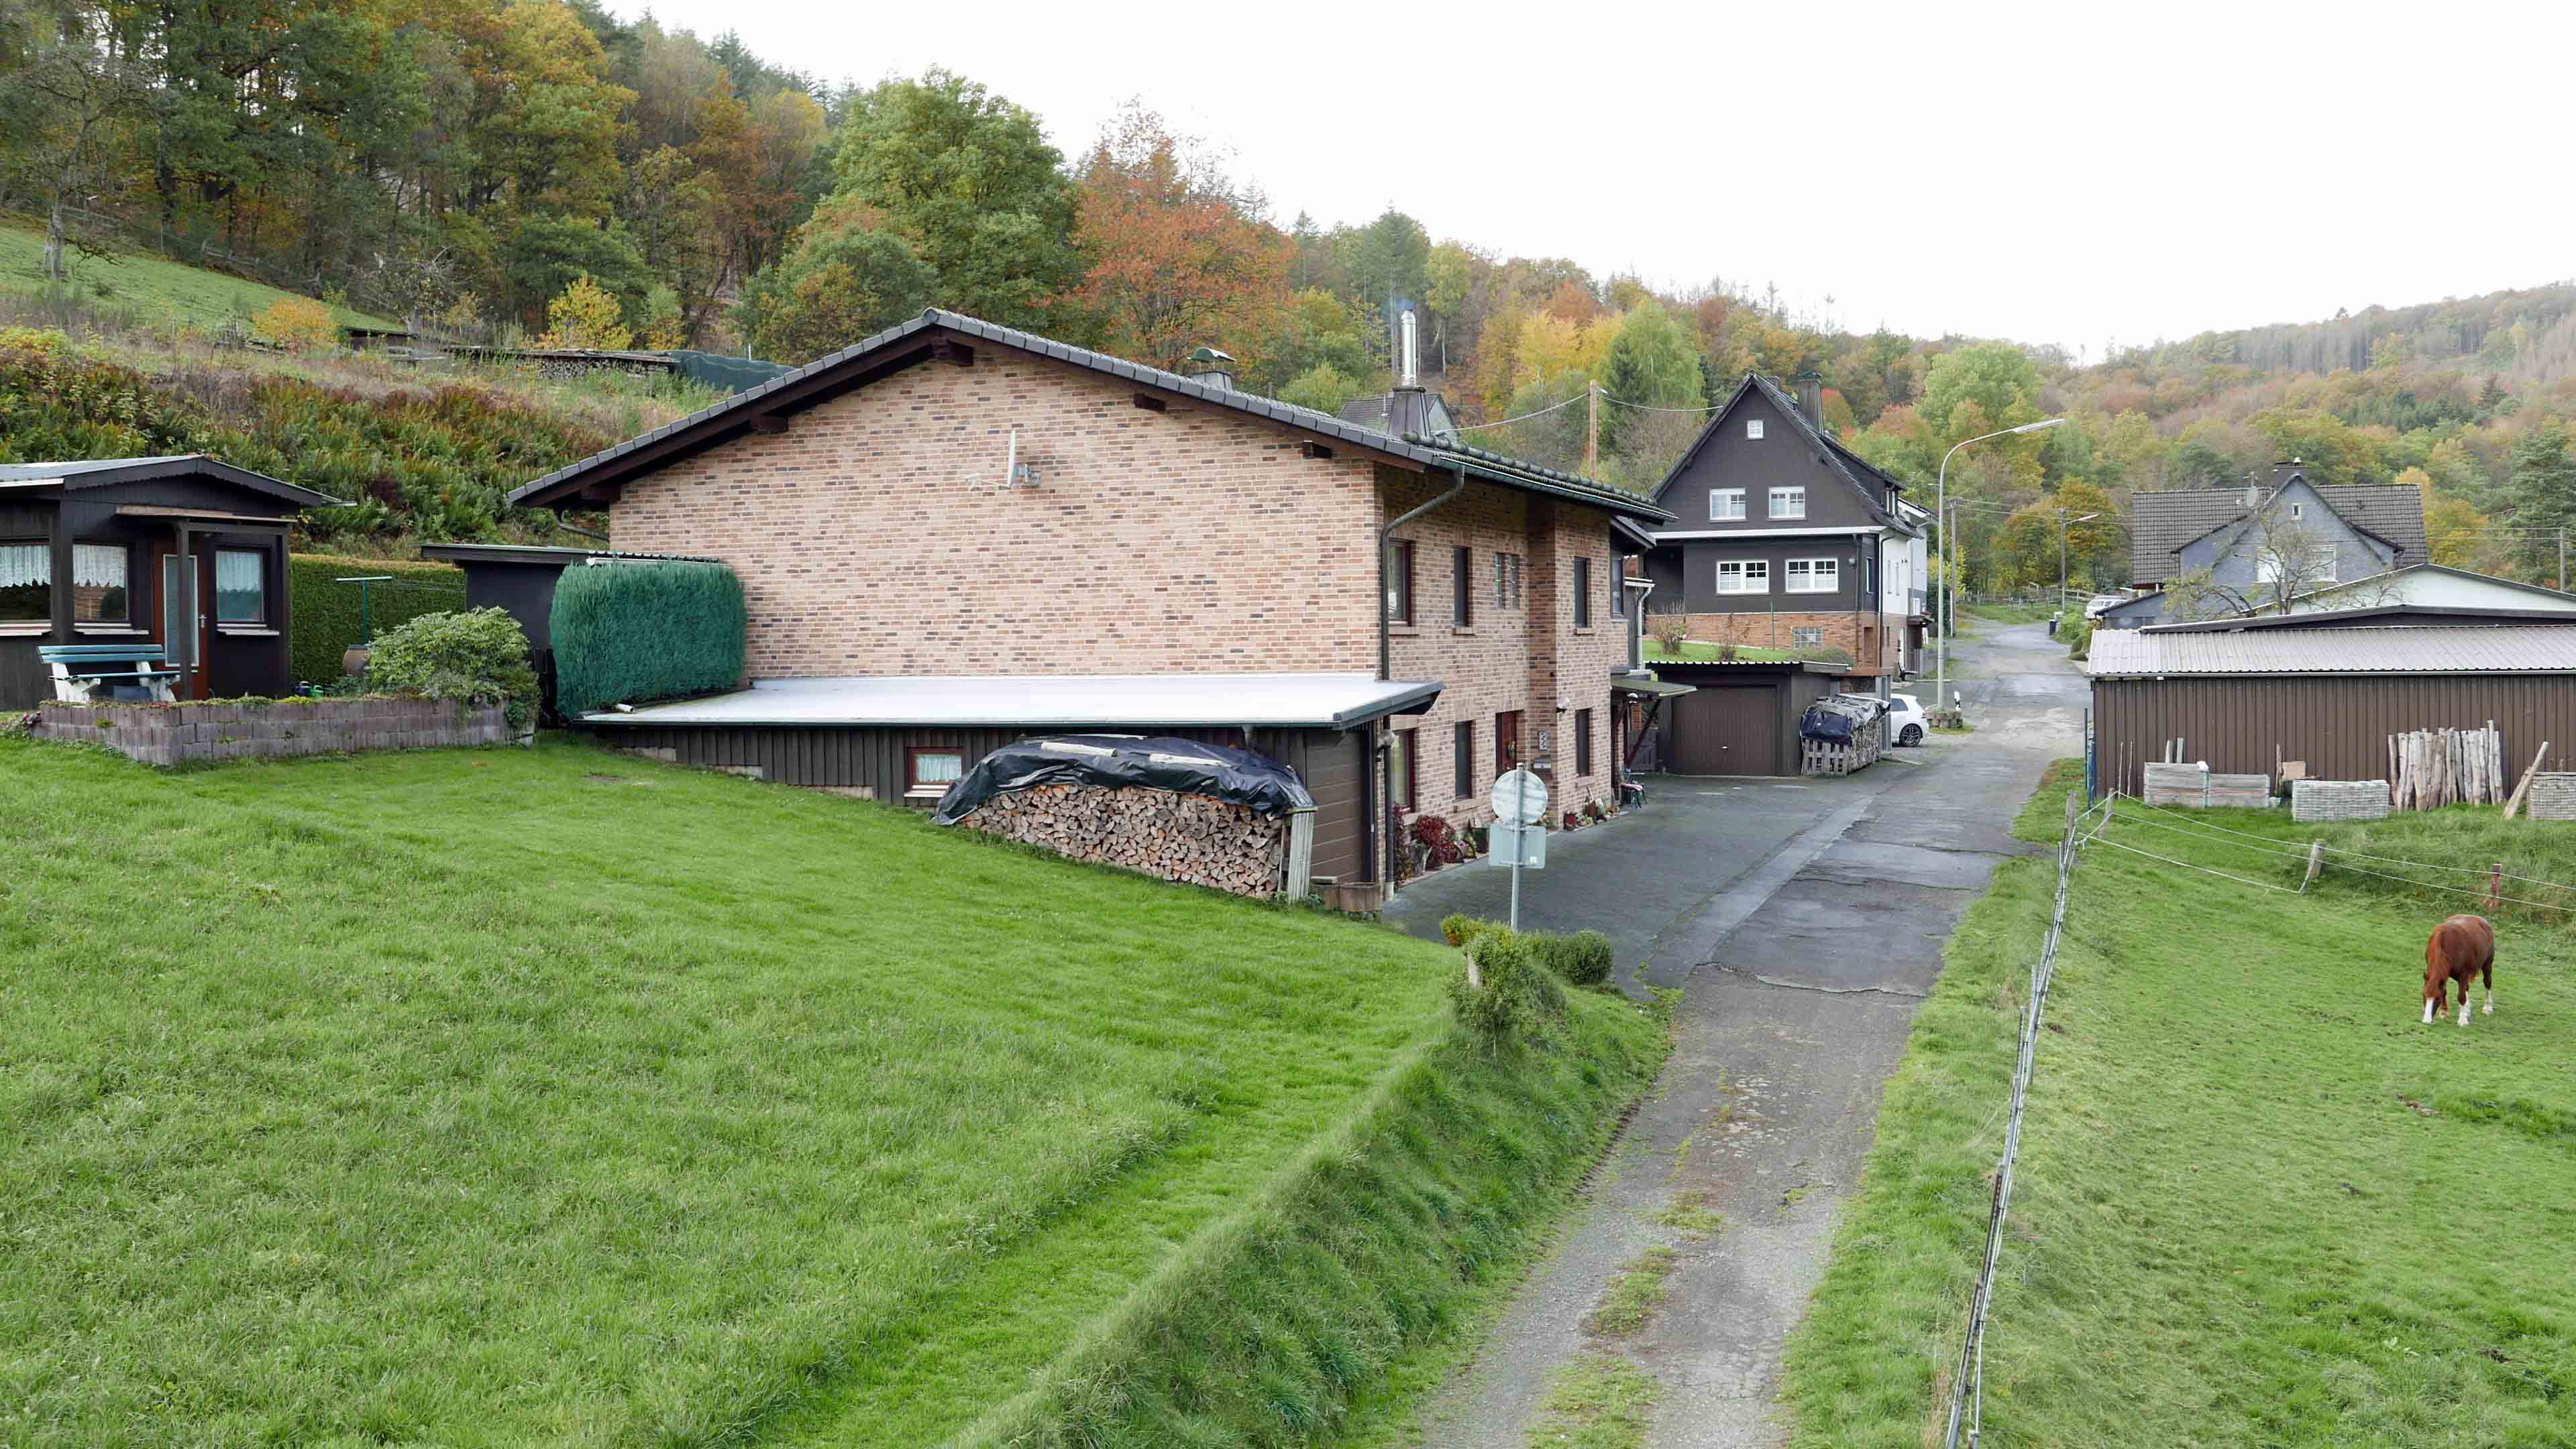 Morsbach: Perfekt für das Landleben in der Natur, Hinterbereich mit Traktorgarage und Gartenhaus